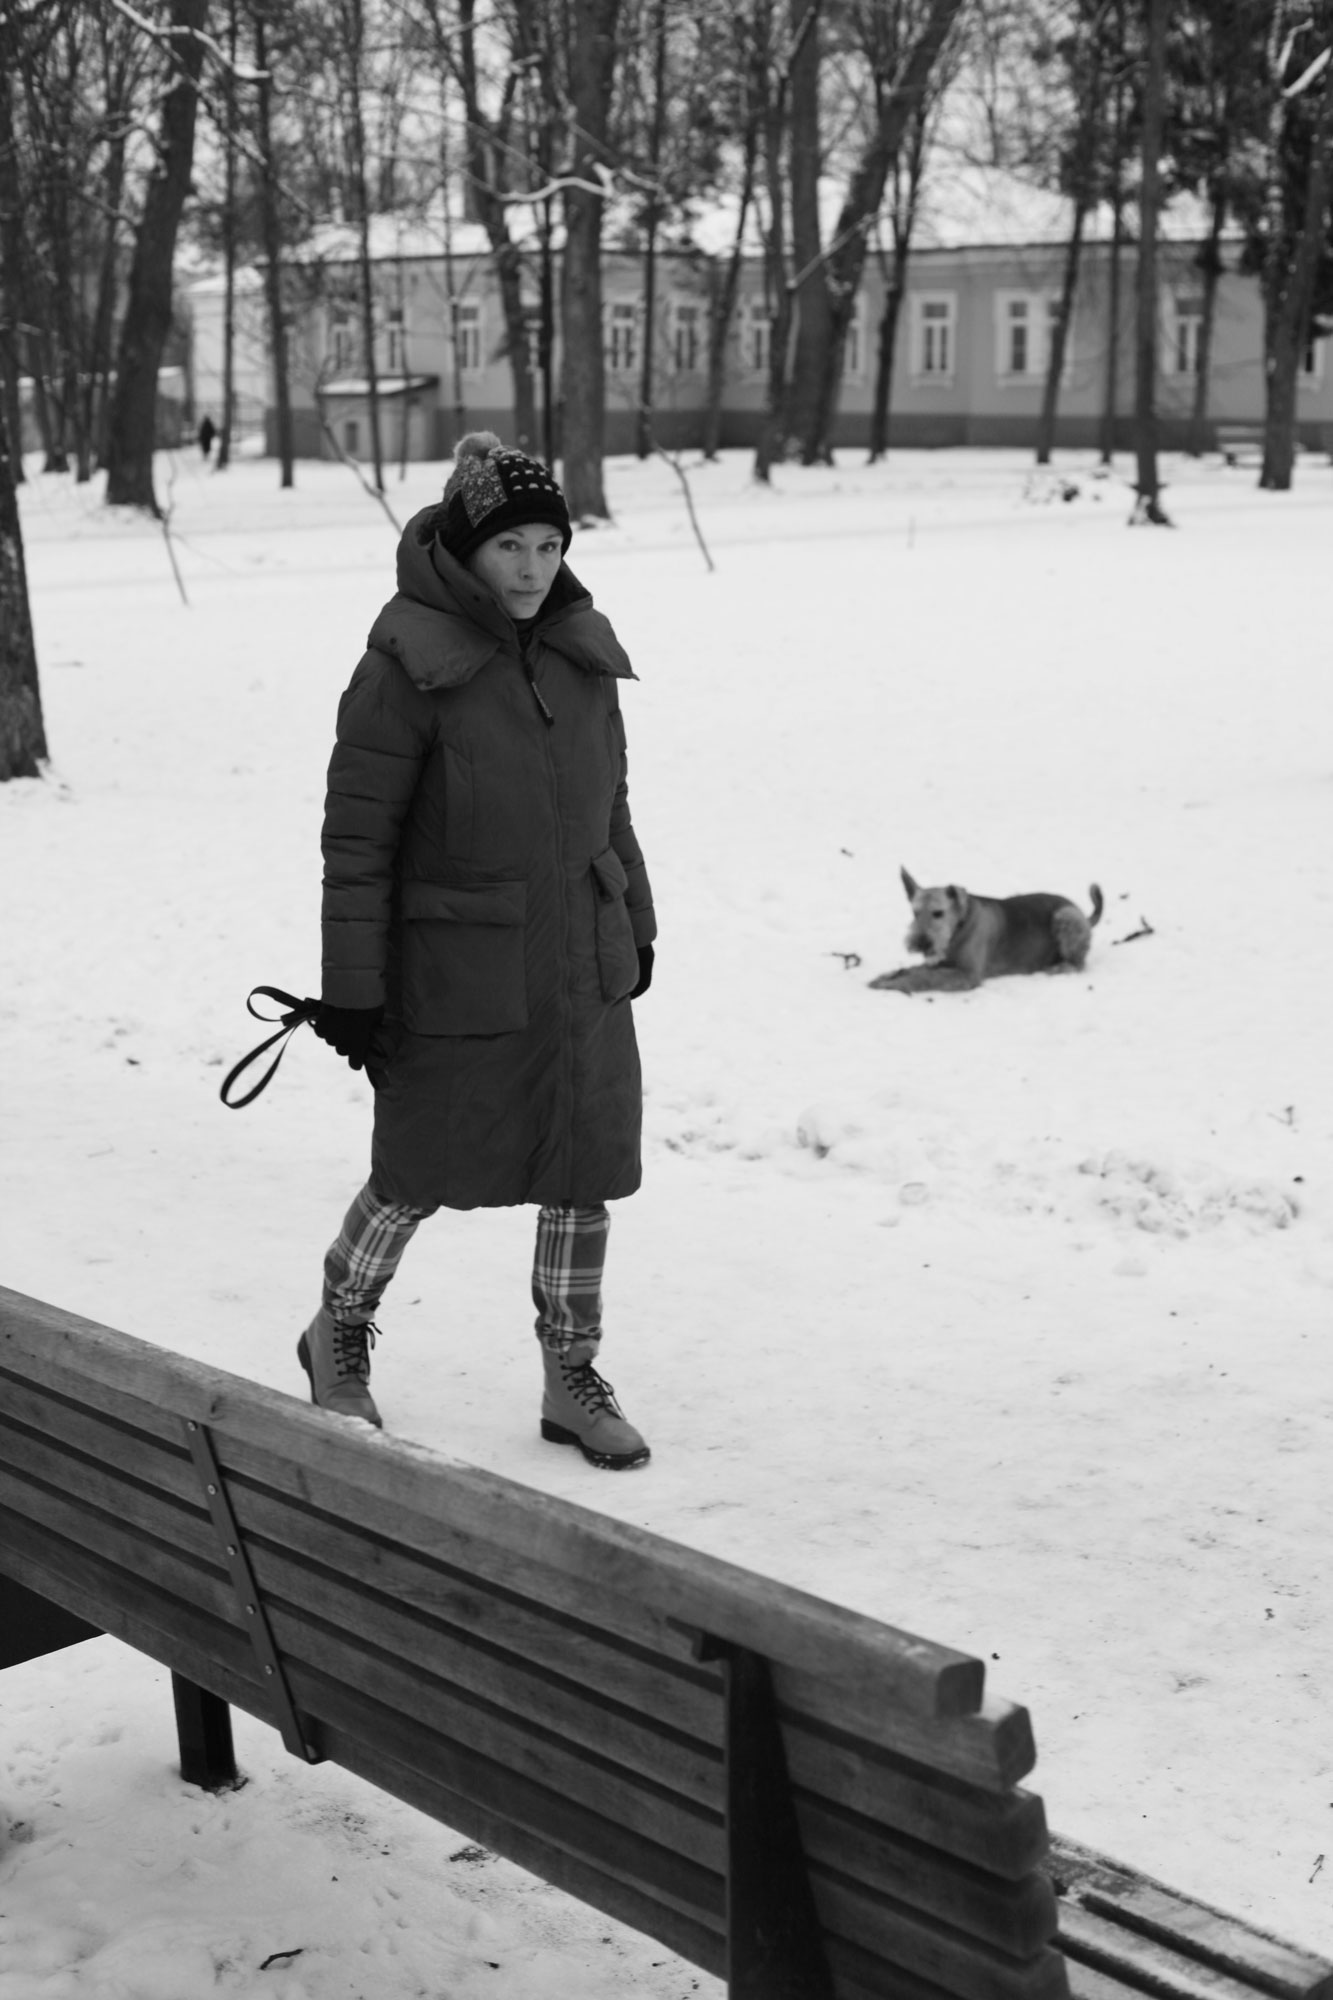 Menotyrininkė Aistė Paulina Virbickaitė. Vilnius, Antakalnis, Sapiegų parkas. Ugnės Matulevičiūtės nuotraukos